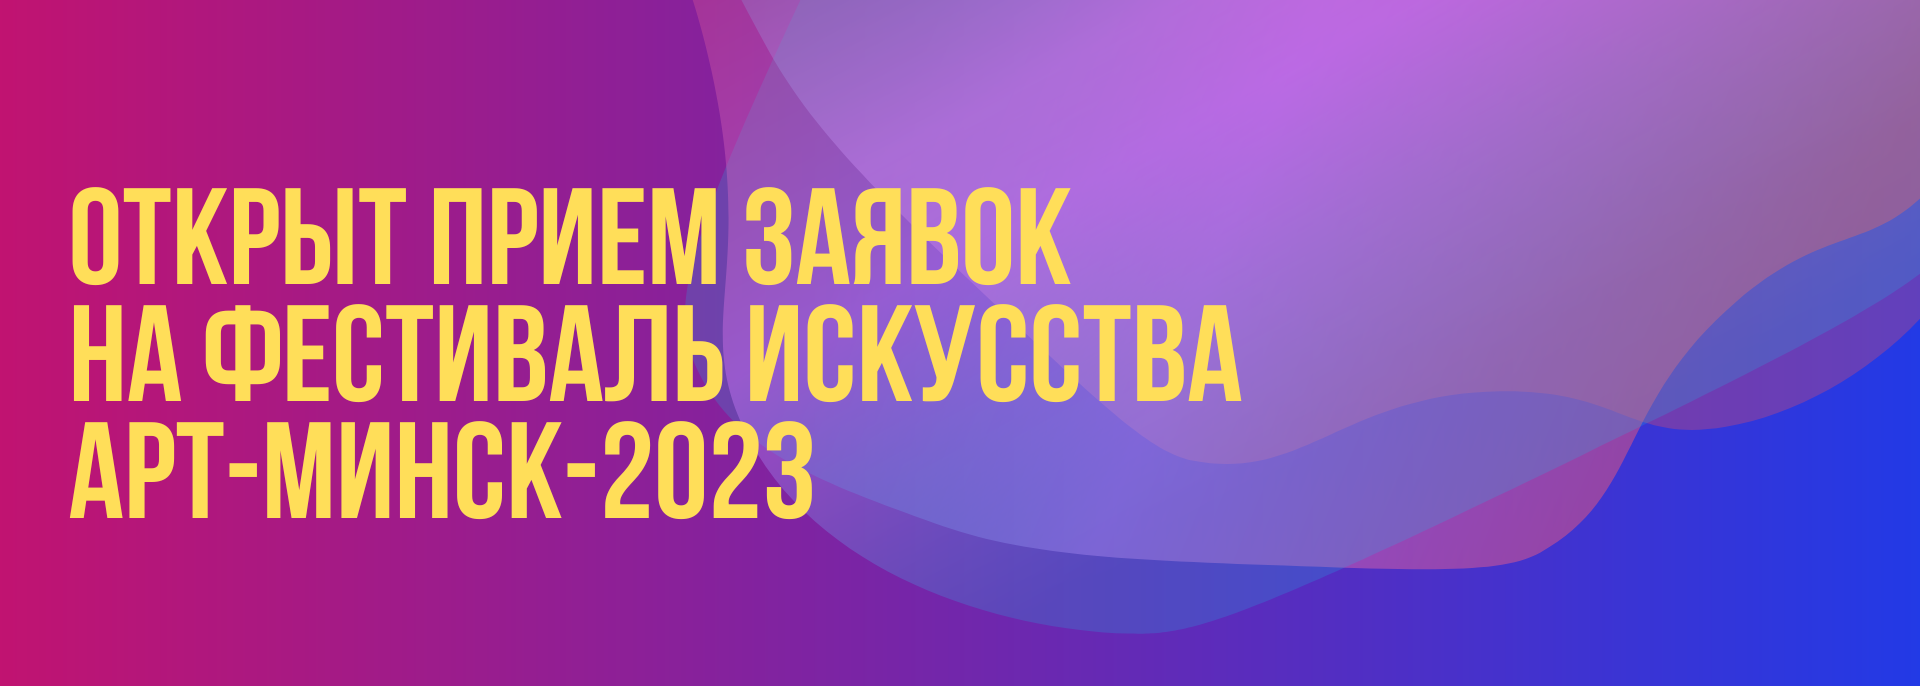 Фестиваль искусства Арт-Минск–2023 объявляет приём заявок.